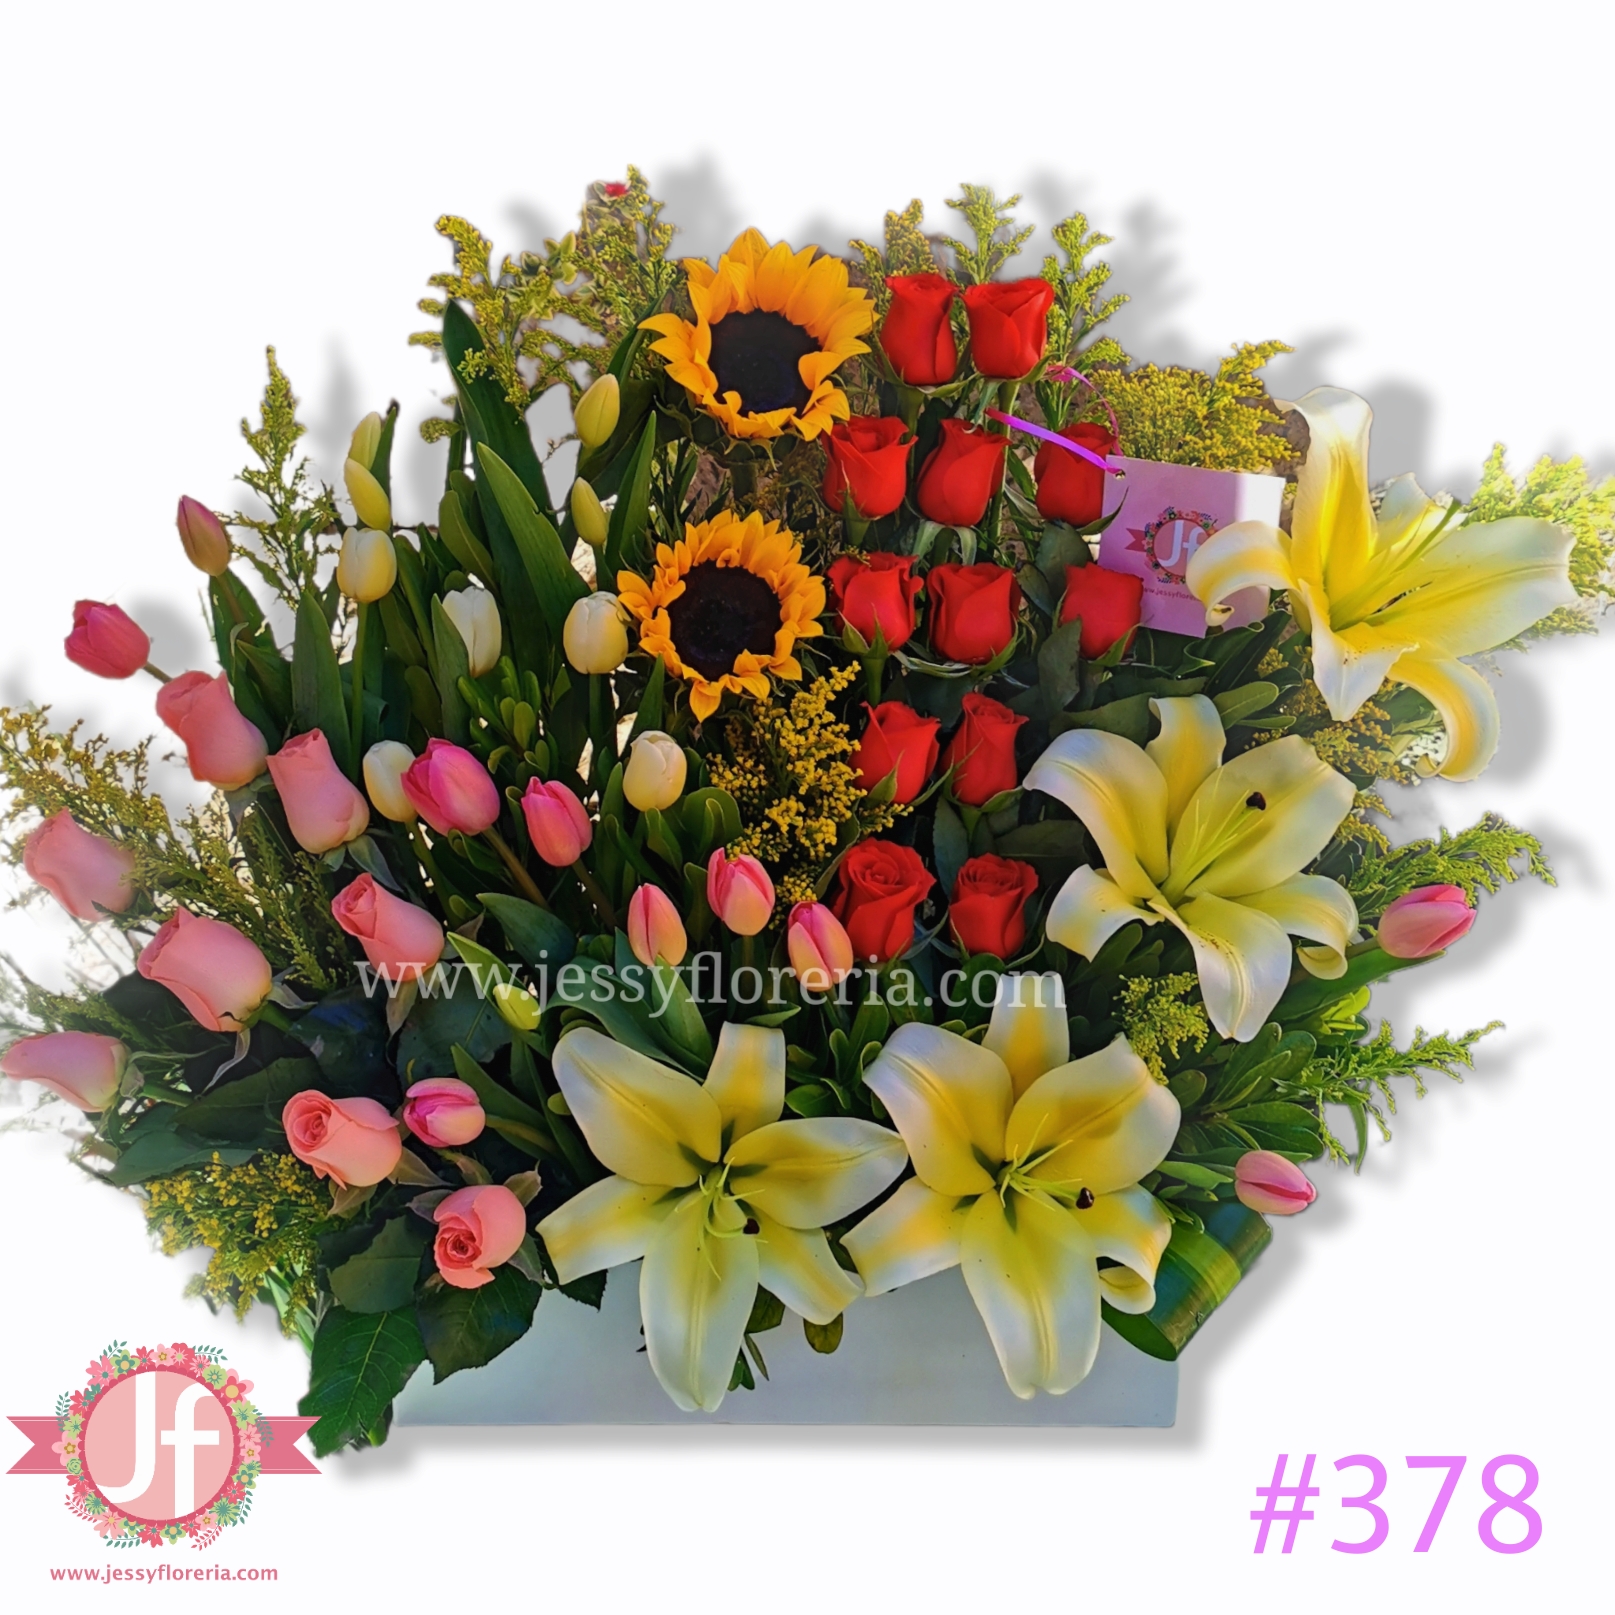 Diseño 20 Tulipanes 24 rosas - Envíos GRATIS Mismo día 2 a 4 Hrs